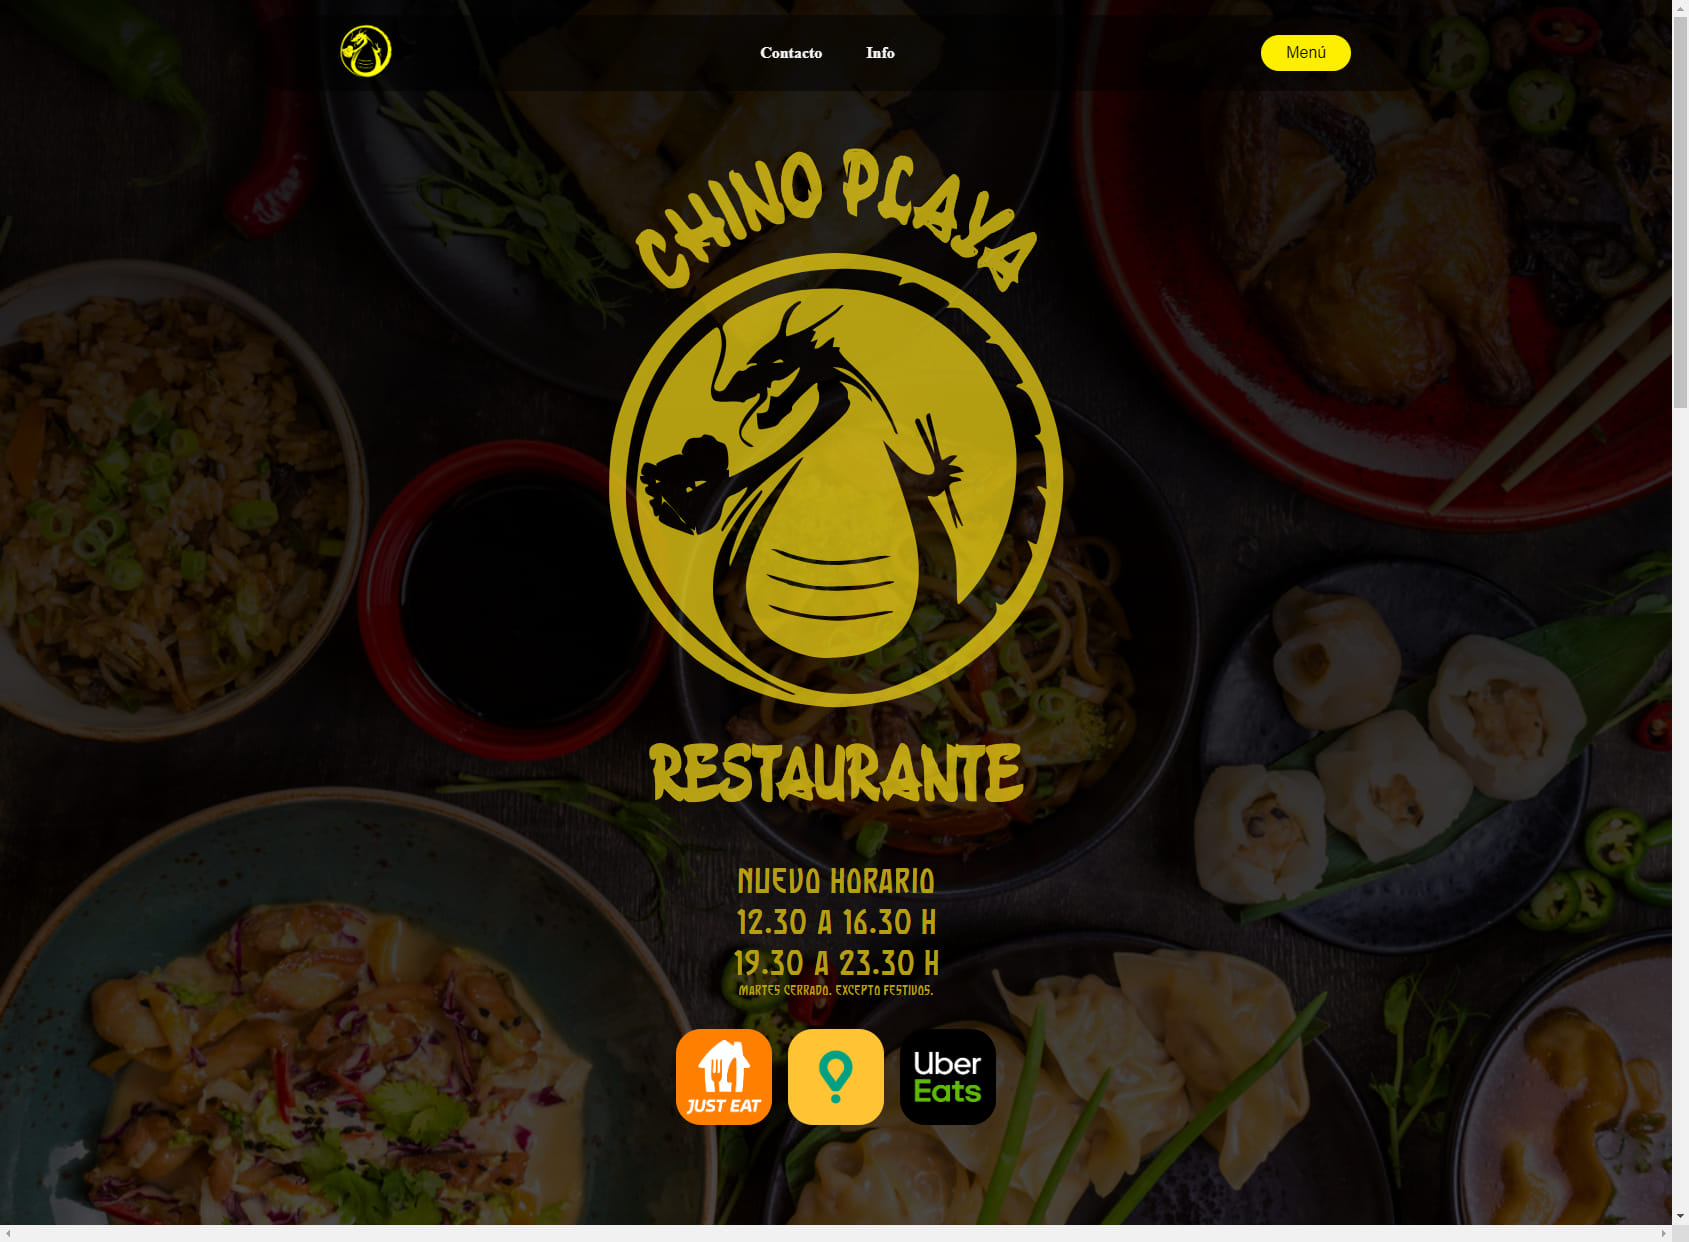 Restaurante Chino Playa